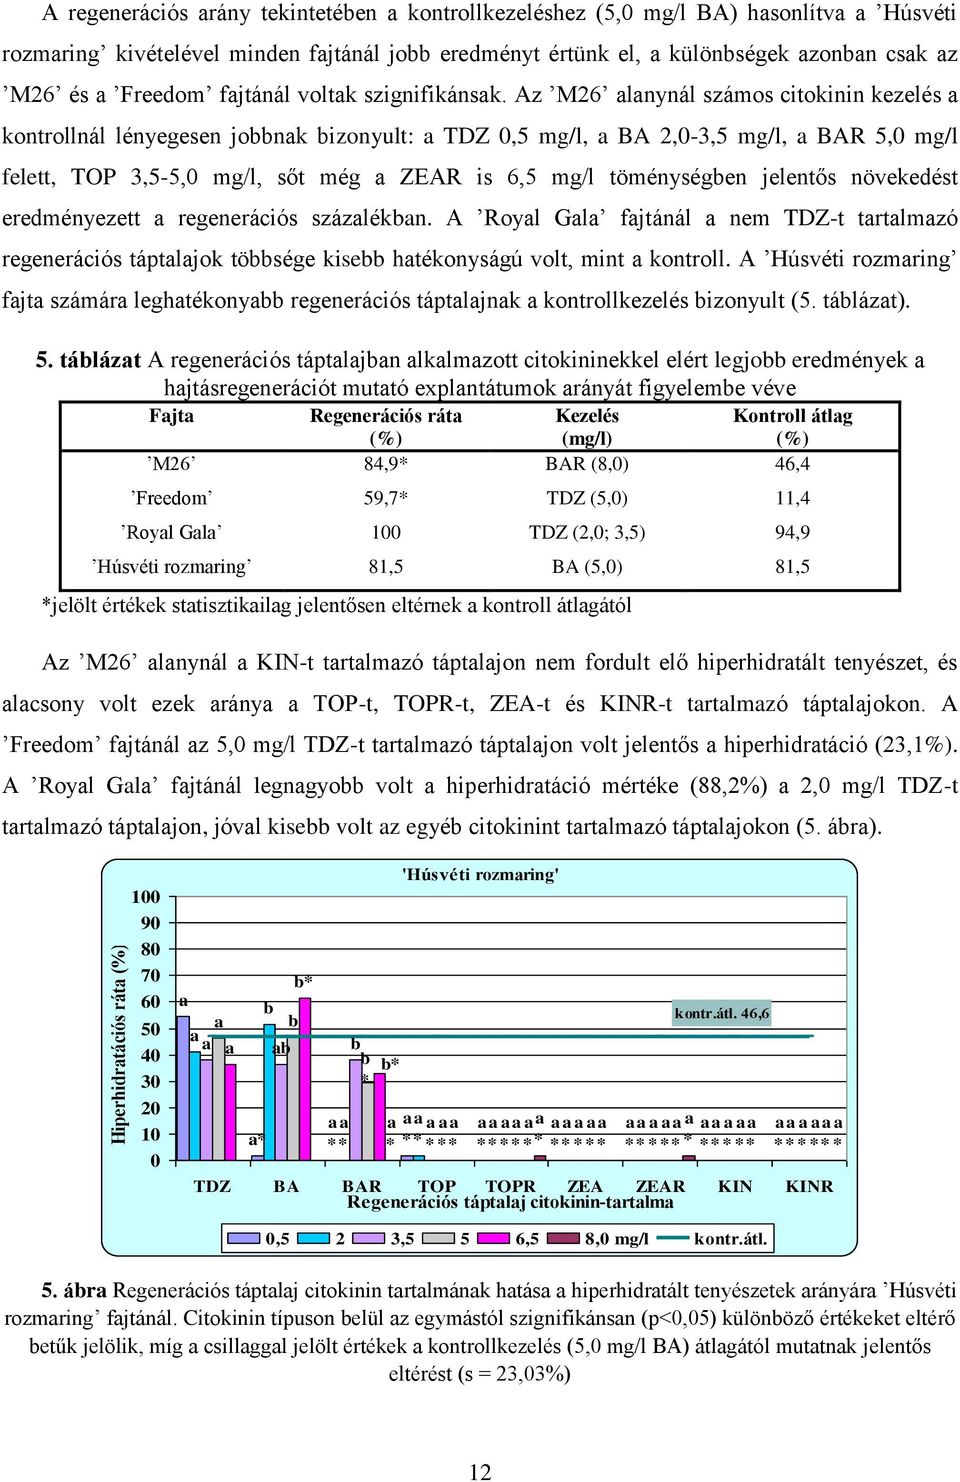 Az M26 alanynál számos citokinin kezelés a kontrollnál lényegesen jobbnak bizonyult: a TDZ 0,5 mg/l, a BA 2,0-3,5 mg/l, a BAR 5,0 mg/l felett, TOP 3,5-5,0 mg/l, sőt még a ZEAR is 6,5 mg/l